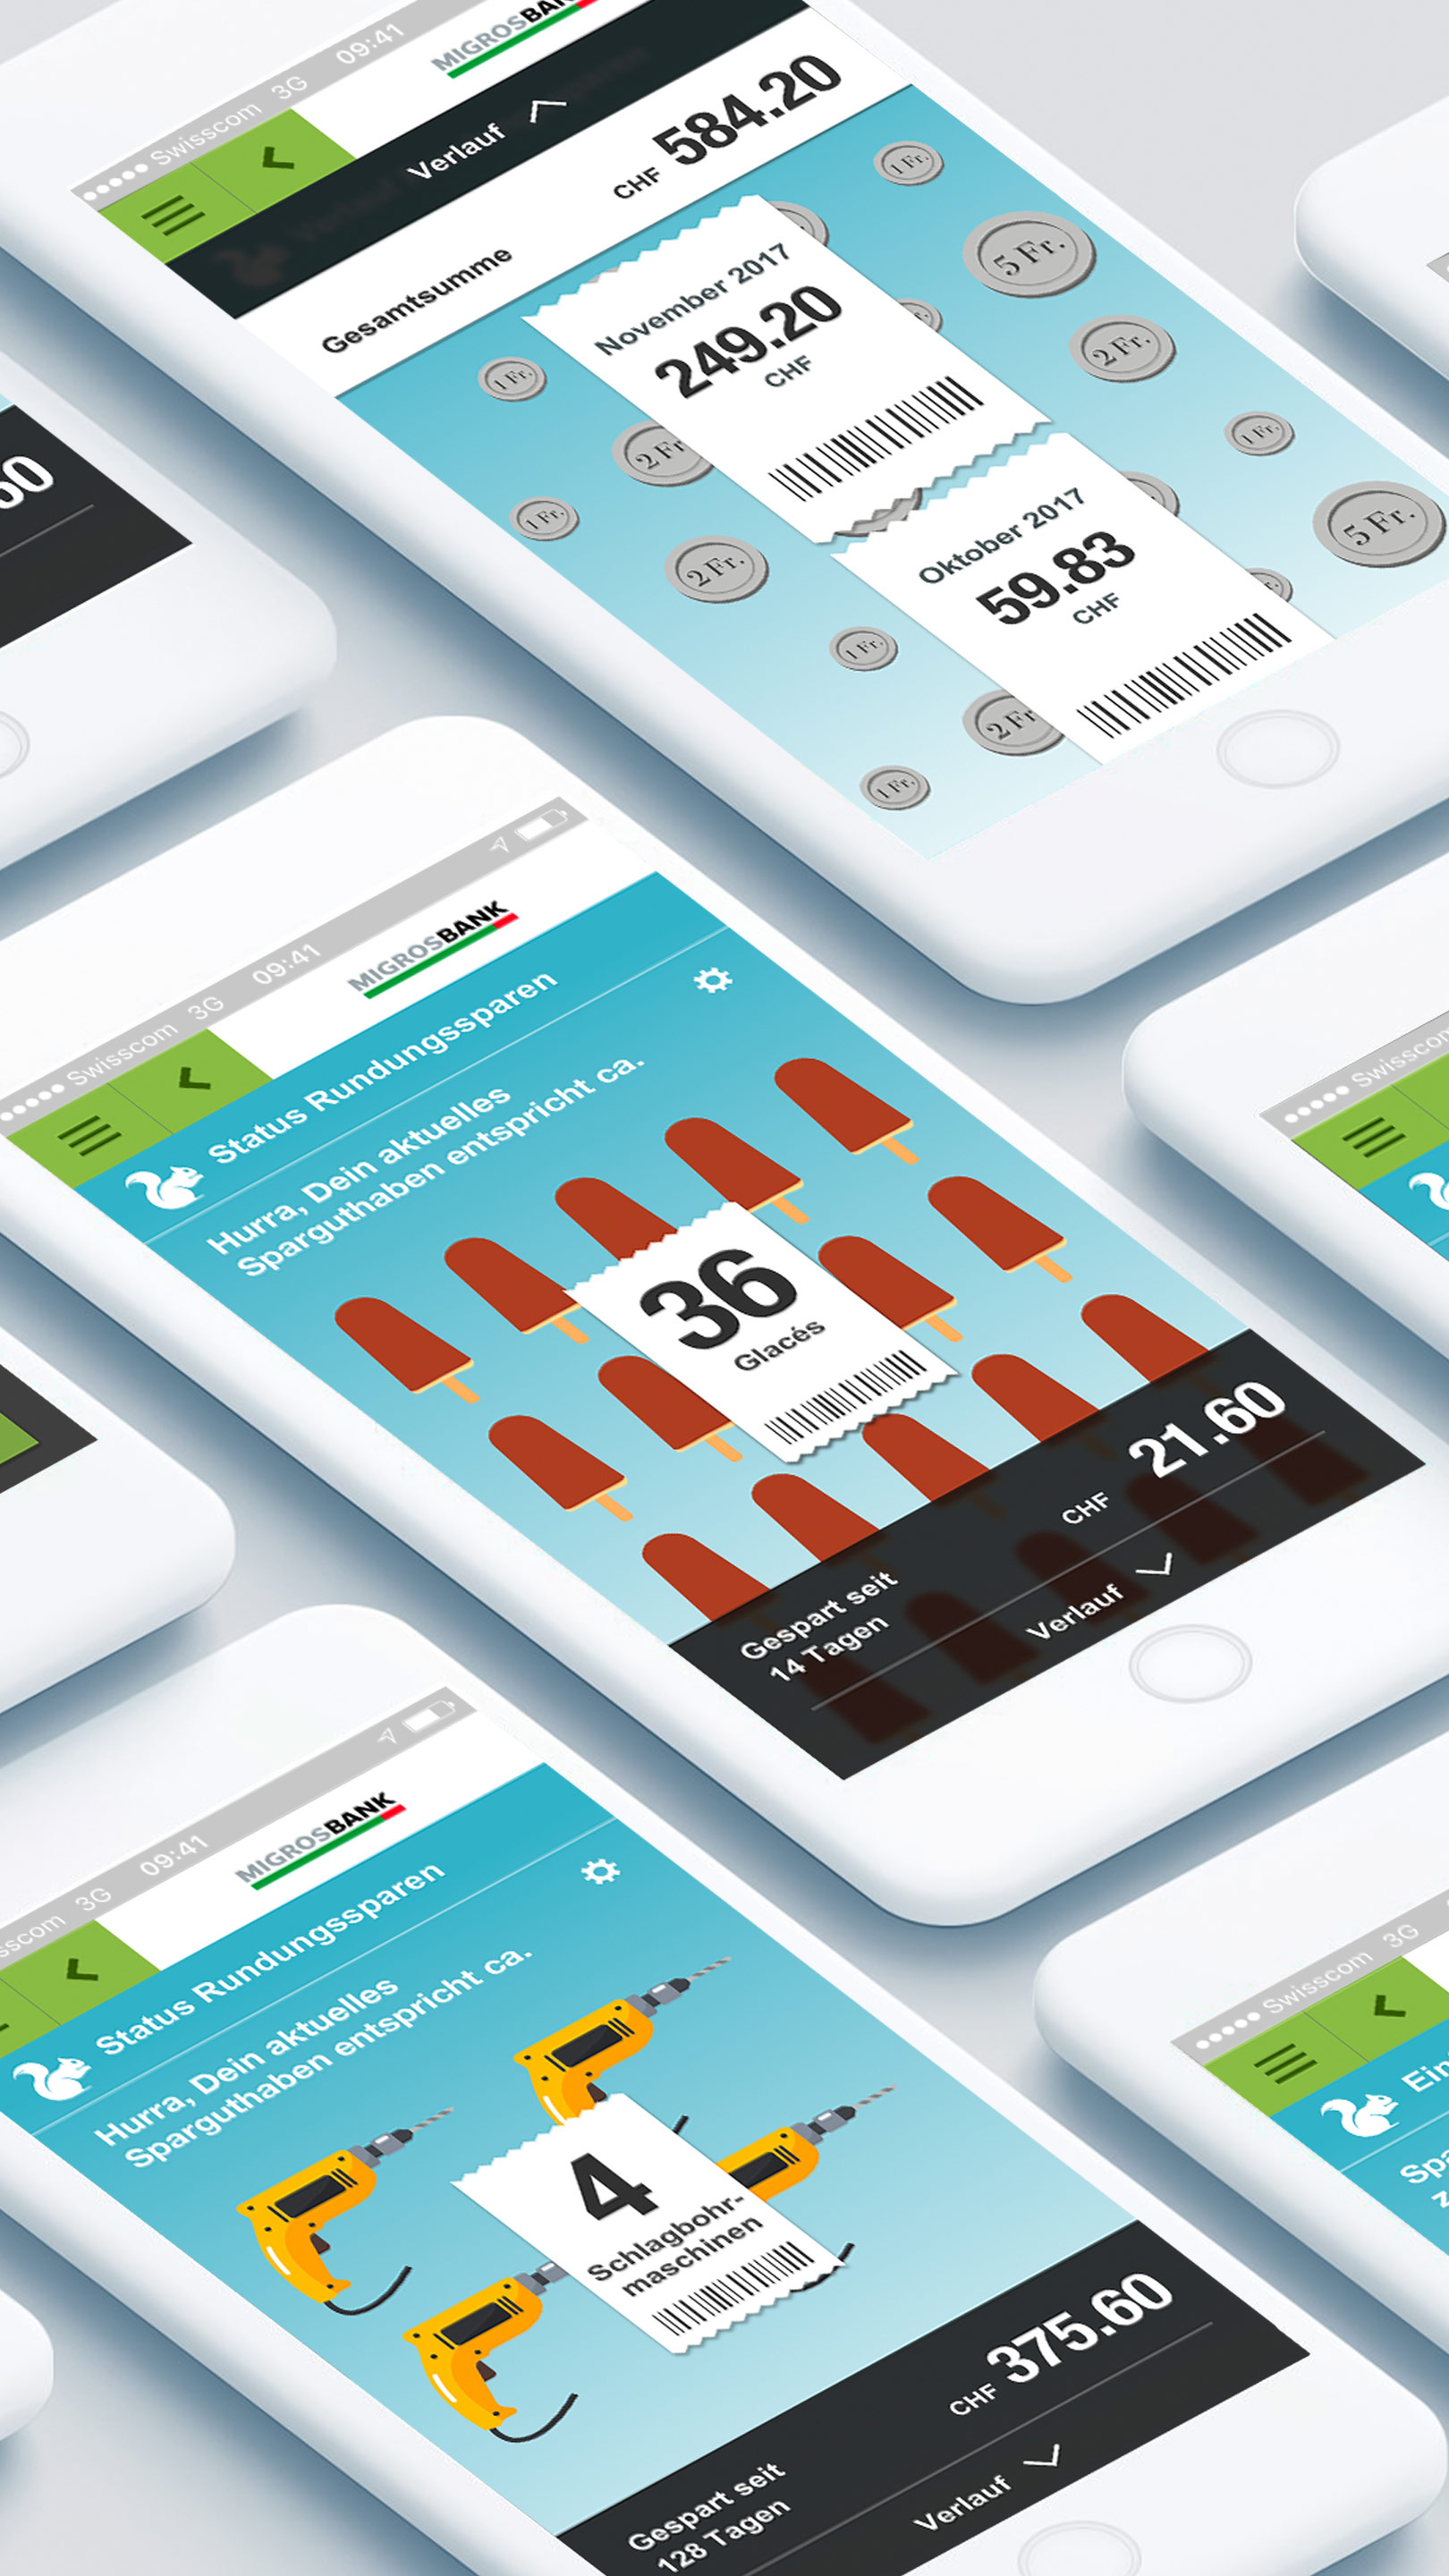 UX und UI Design für das Spar-App der Migros Bank.